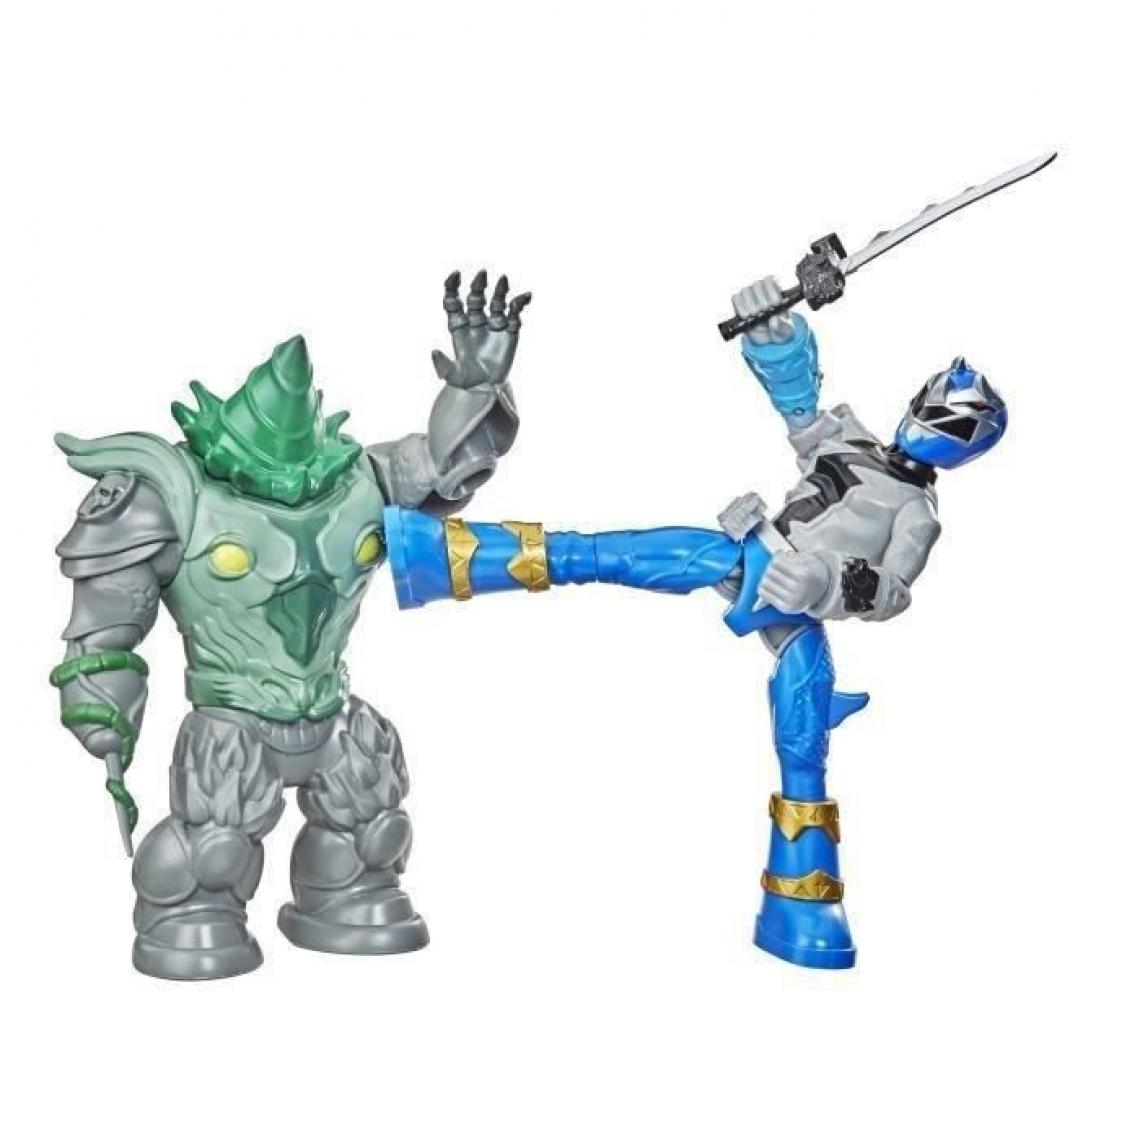 Hasbro - Power Rangers - Pack Figurines Battle Attacker Ranger bleu VS Shockhorn - 15 cm - Radios et servos